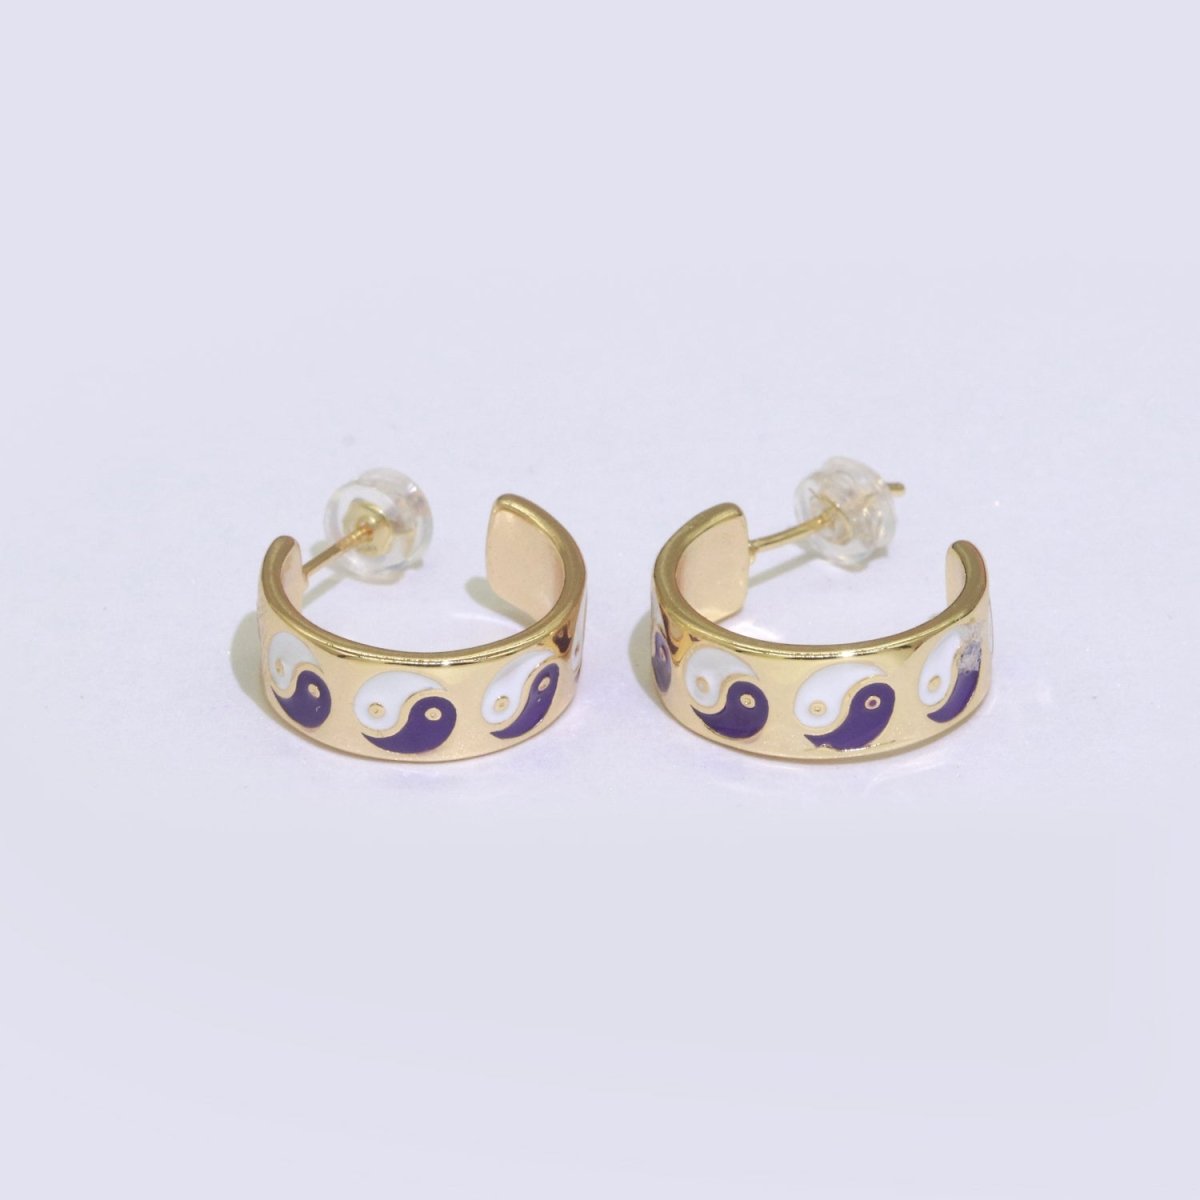 Yin Yang Enamel Round hoop earrings 17.5mm, Lead Nickel free Earrings Y2K Simple Round hoop 1 pair hoops - DLUXCA